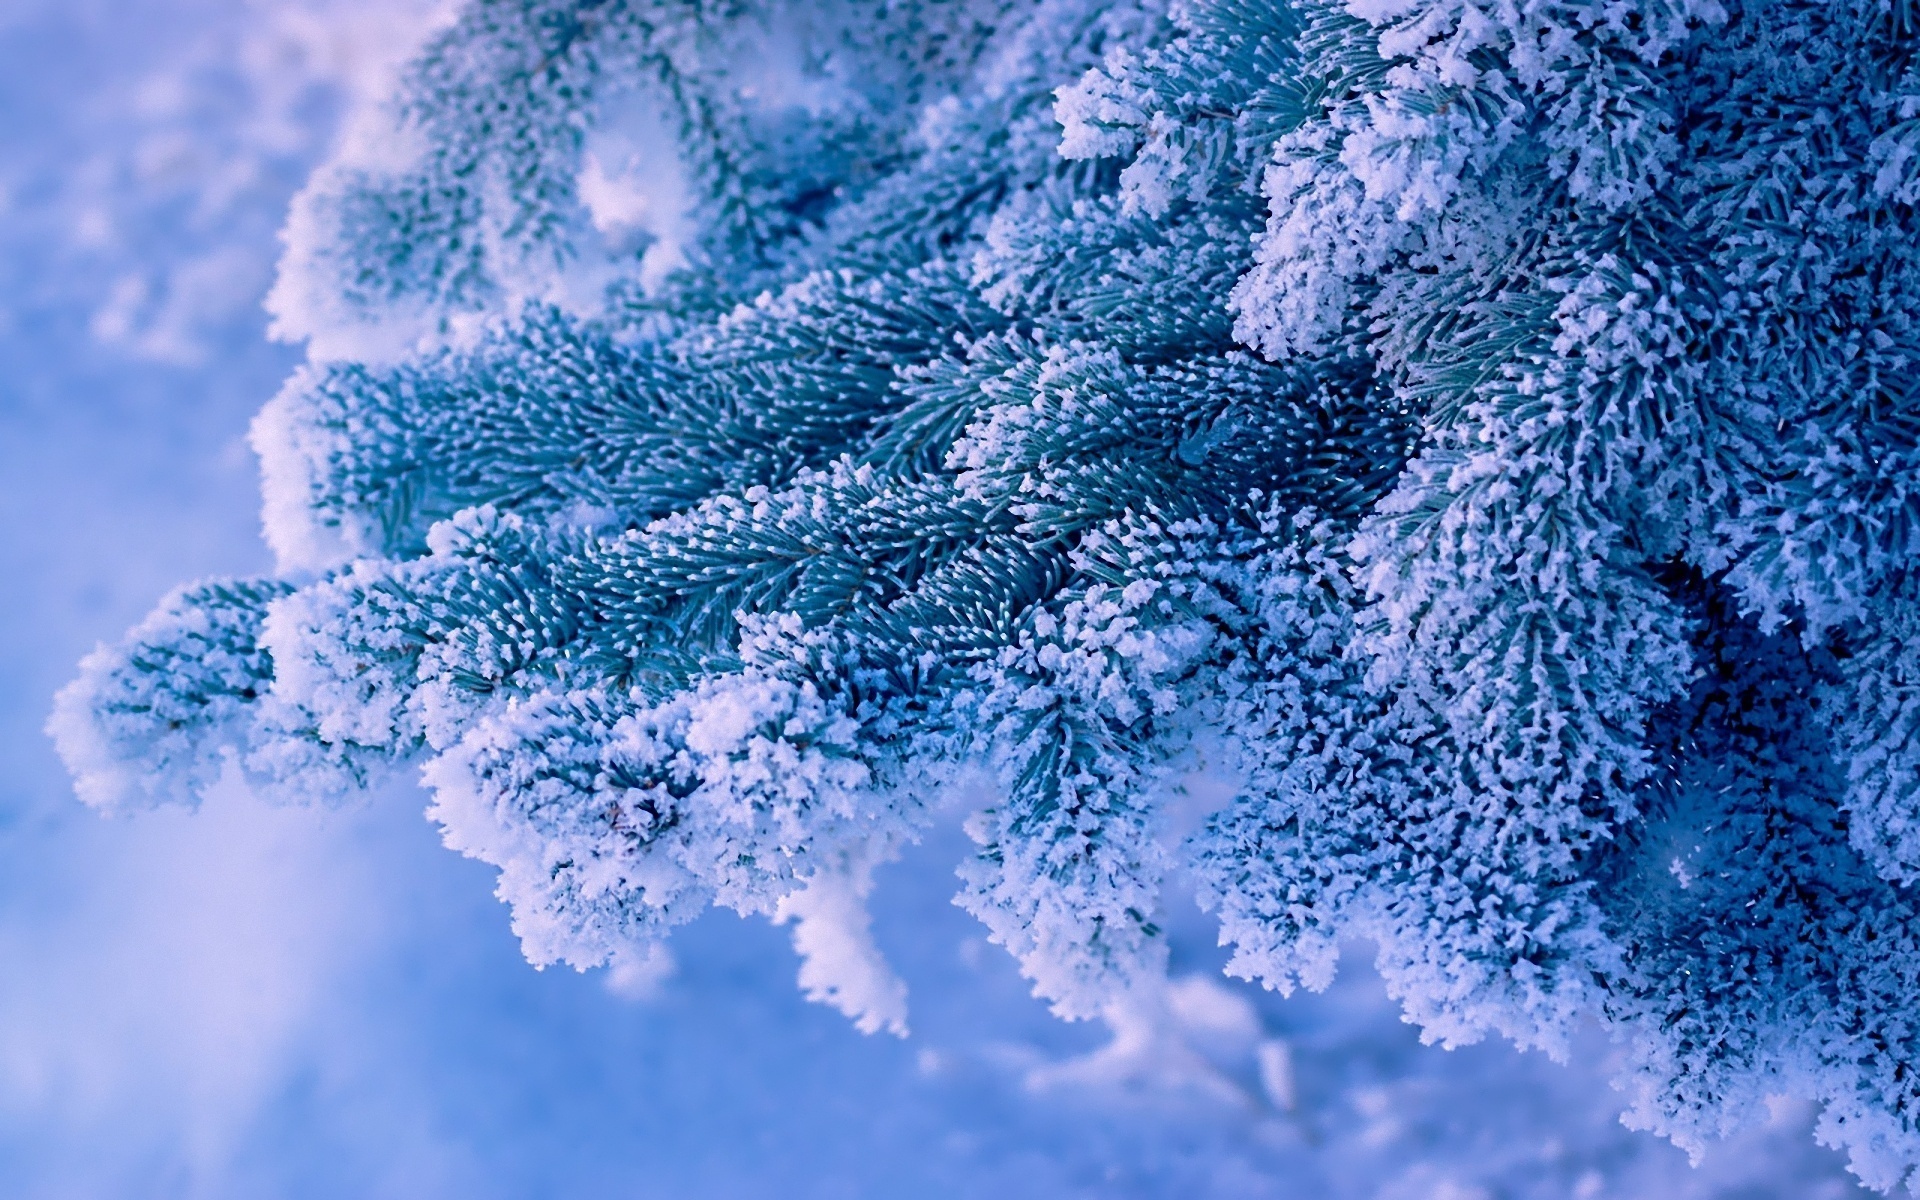 Скачать обои бесплатно Зима, Снег, Рождество, Земля/природа картинка на рабочий стол ПК